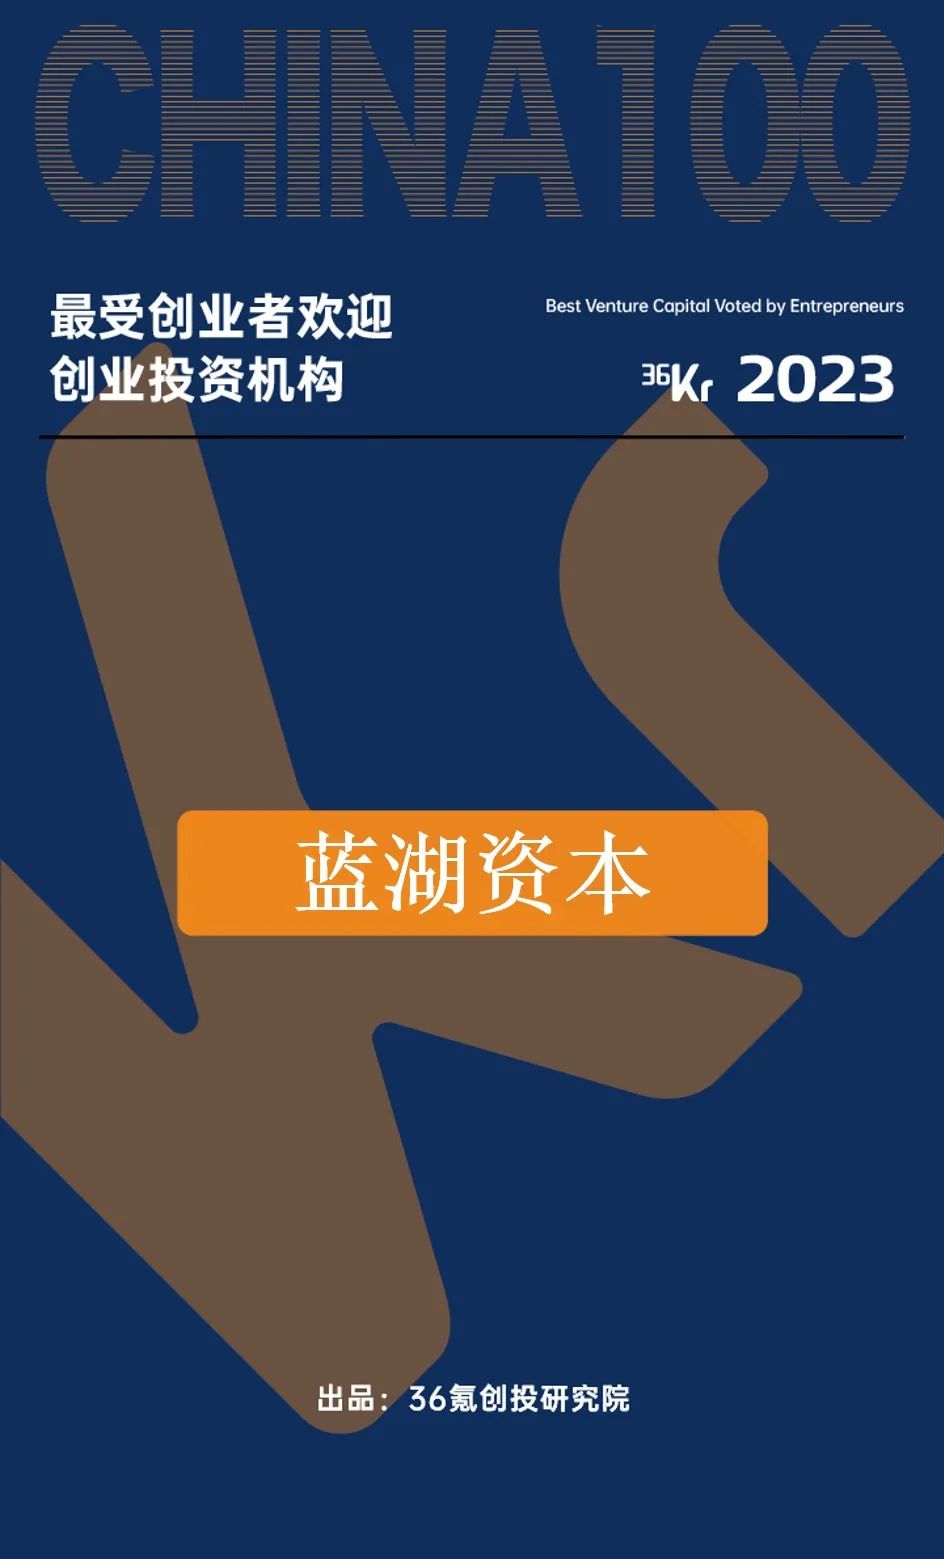 蓝湖资本荣登36氪2023届「最受创业者欢迎创业投资机构」榜单 | 蓝湖捷报